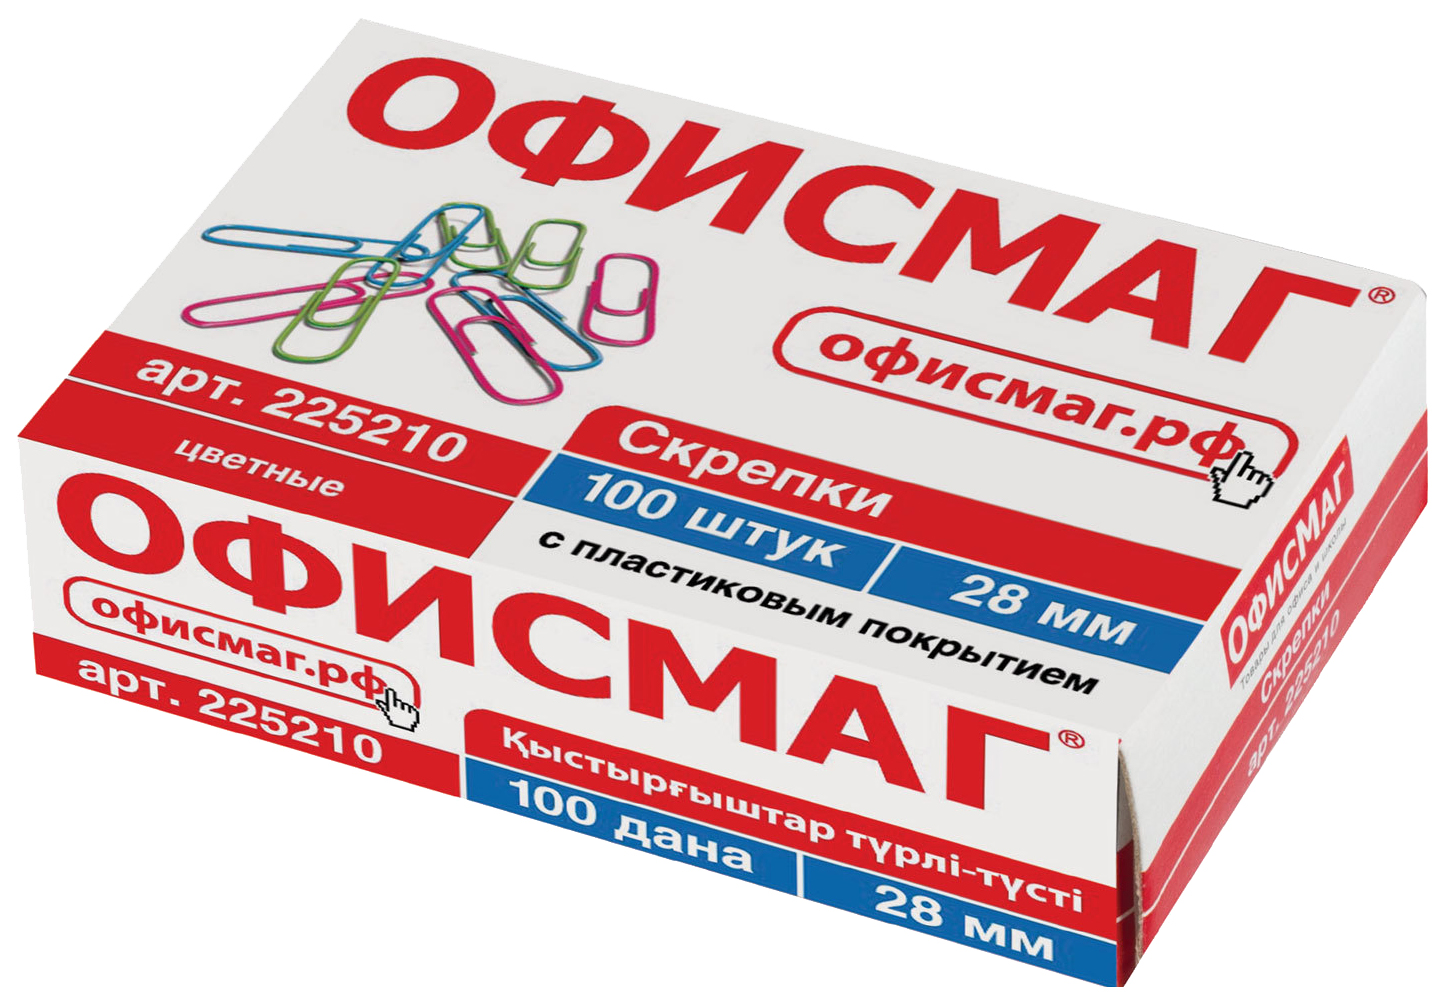 Скрепки ОФИСМАГ, 28 мм, цветные, 100 шт в картонной коробке, Россия, 225210